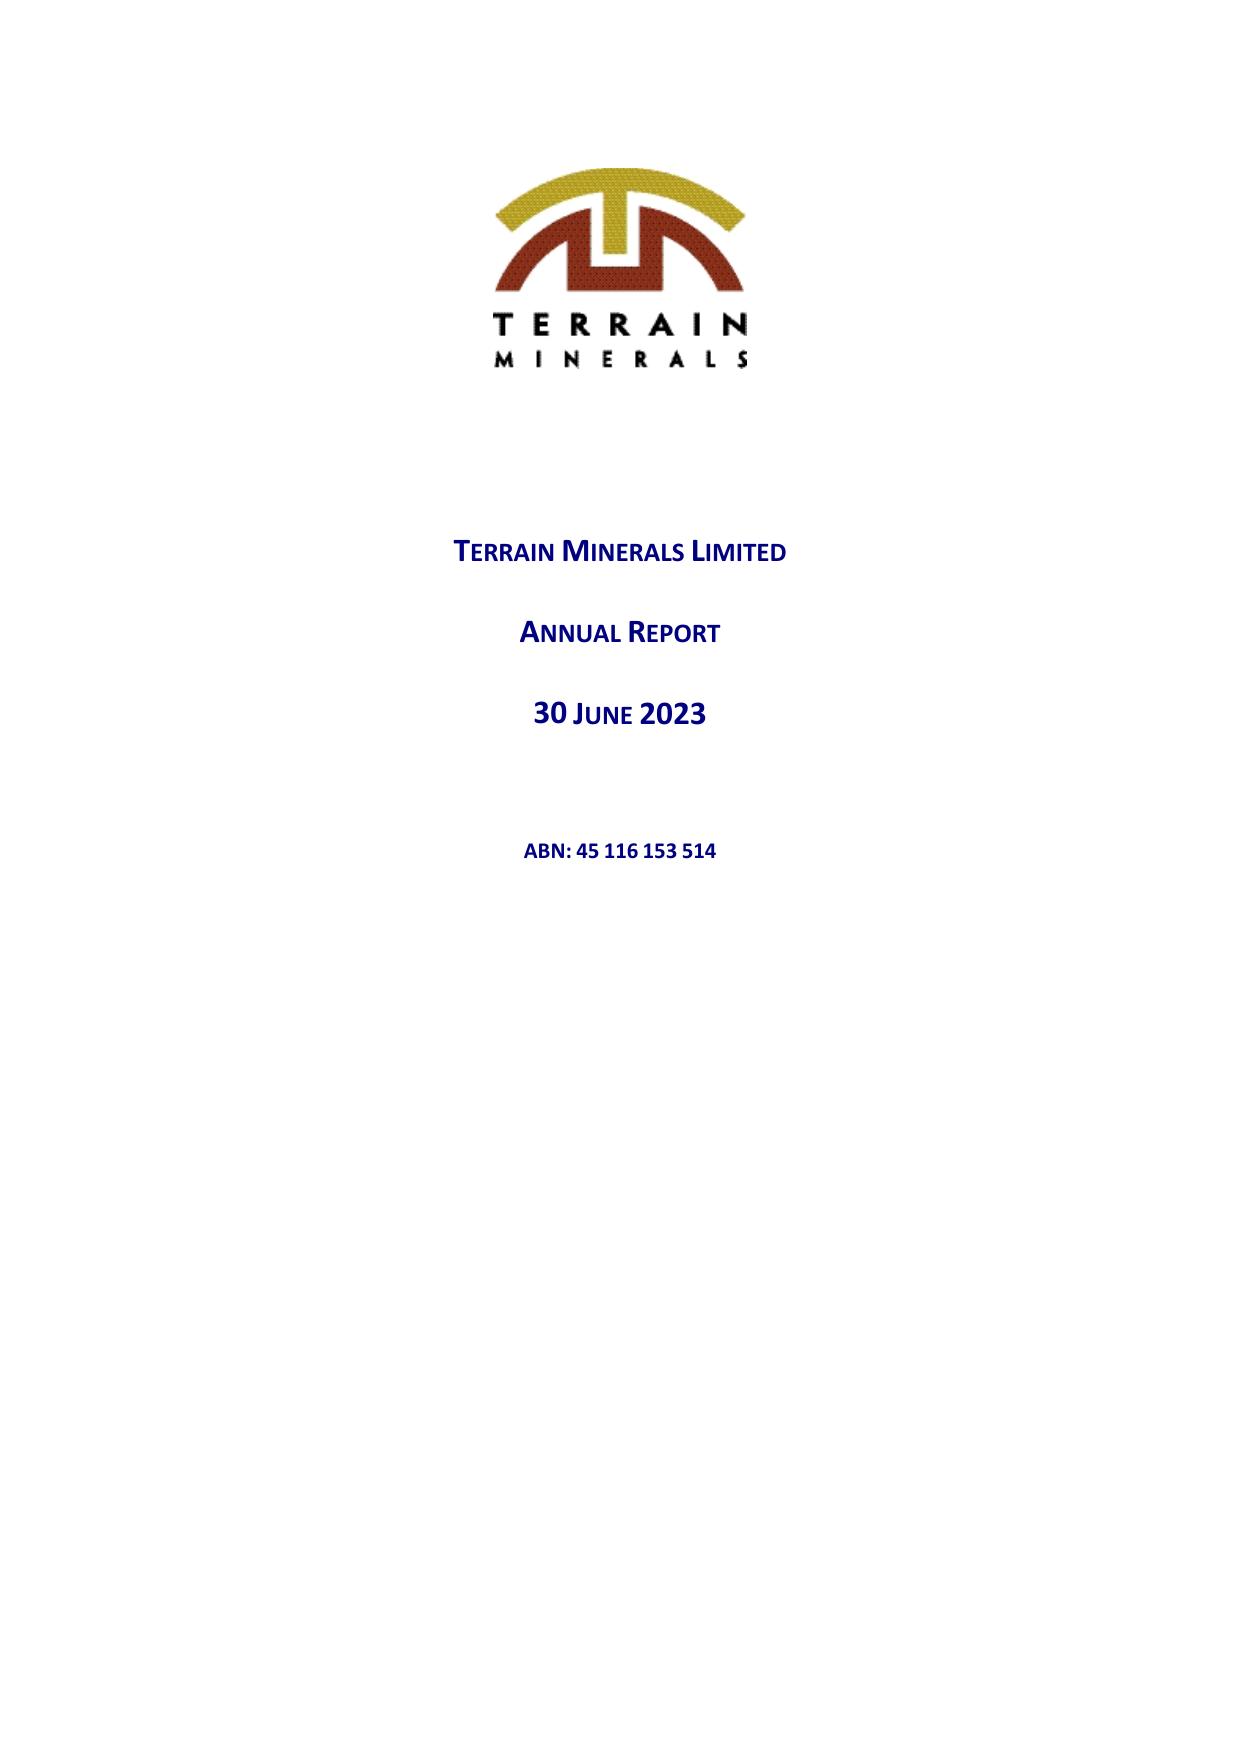 TERRAINMINERALS 2023 Annual Report